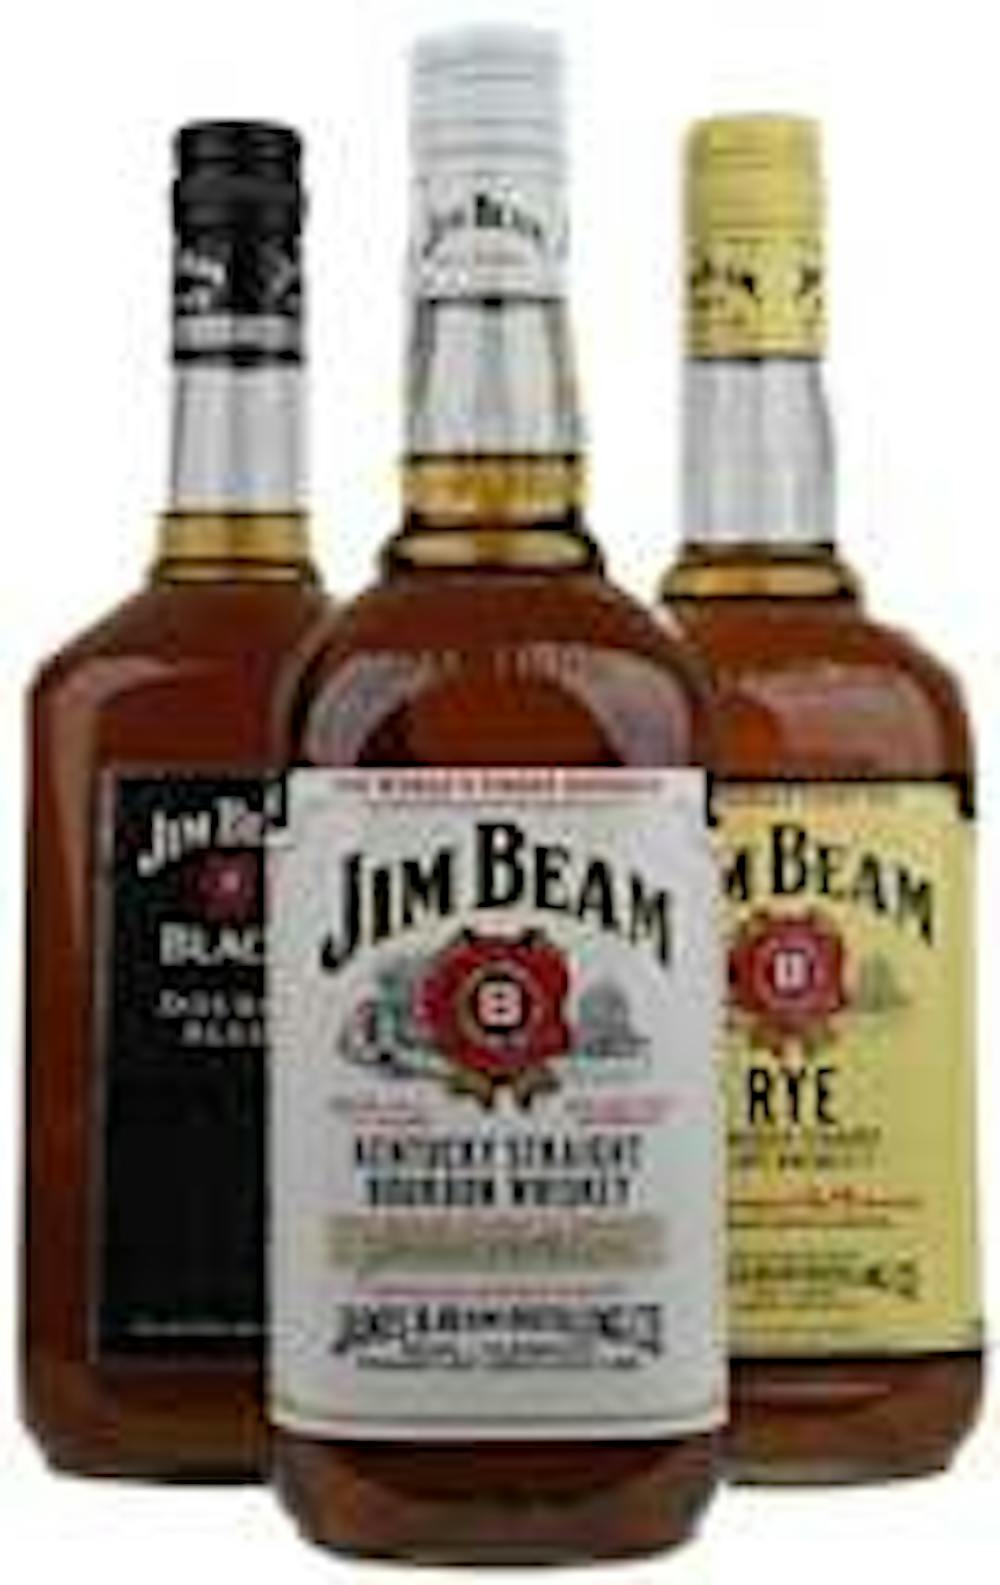 Jim Beam Bourbon Rebate